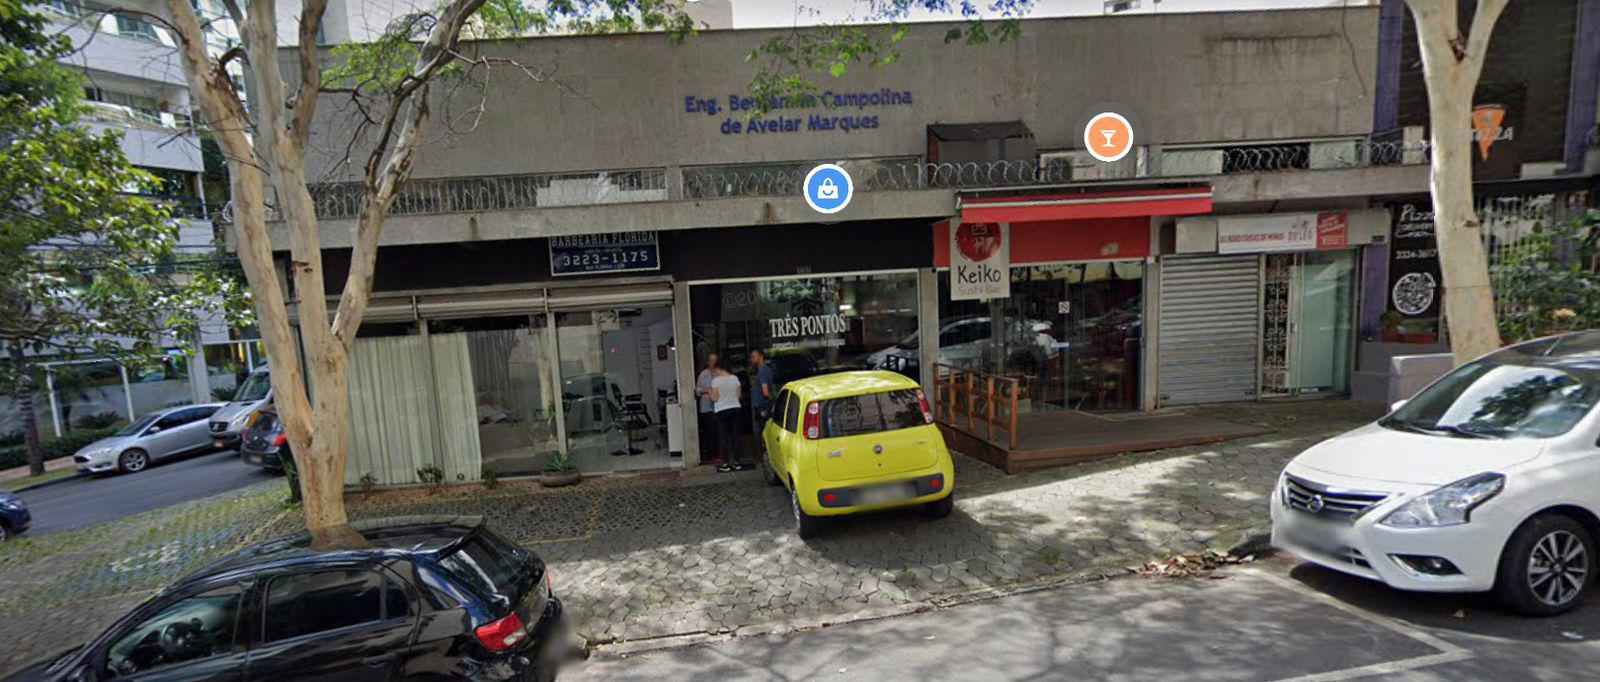 Restaurante japonês de BH encerra atividades com mensagem enigmática - Google Street View / Reprodução